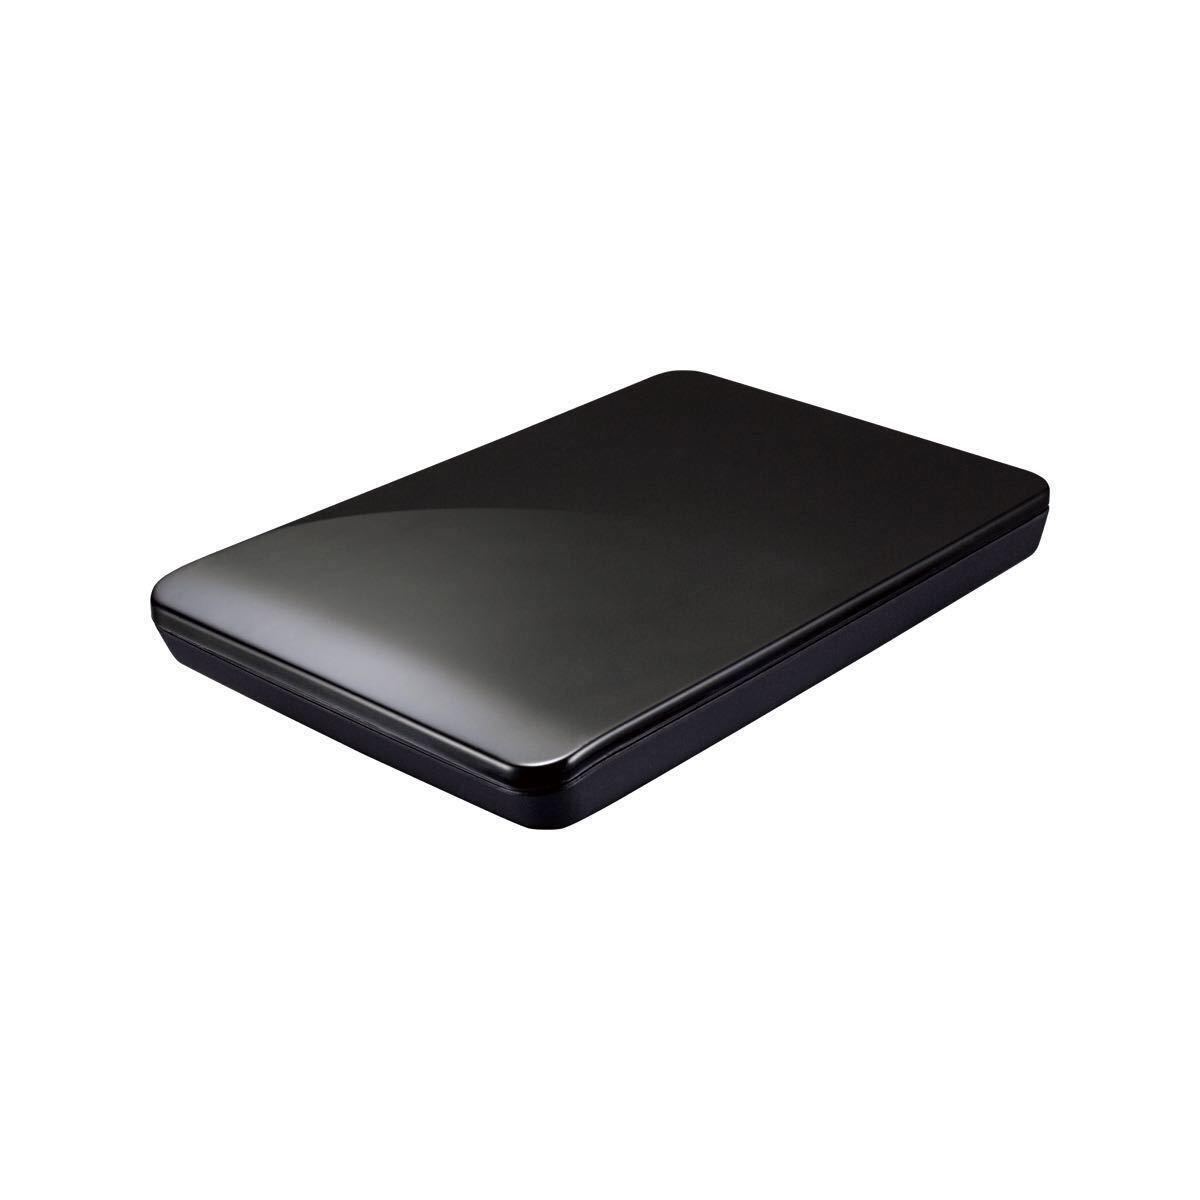 ポータブル HDD/TOSHIBA MK1652GSX 160GB 【中古】玄人志向 型名GW2.5CR-U3【新品未使用】